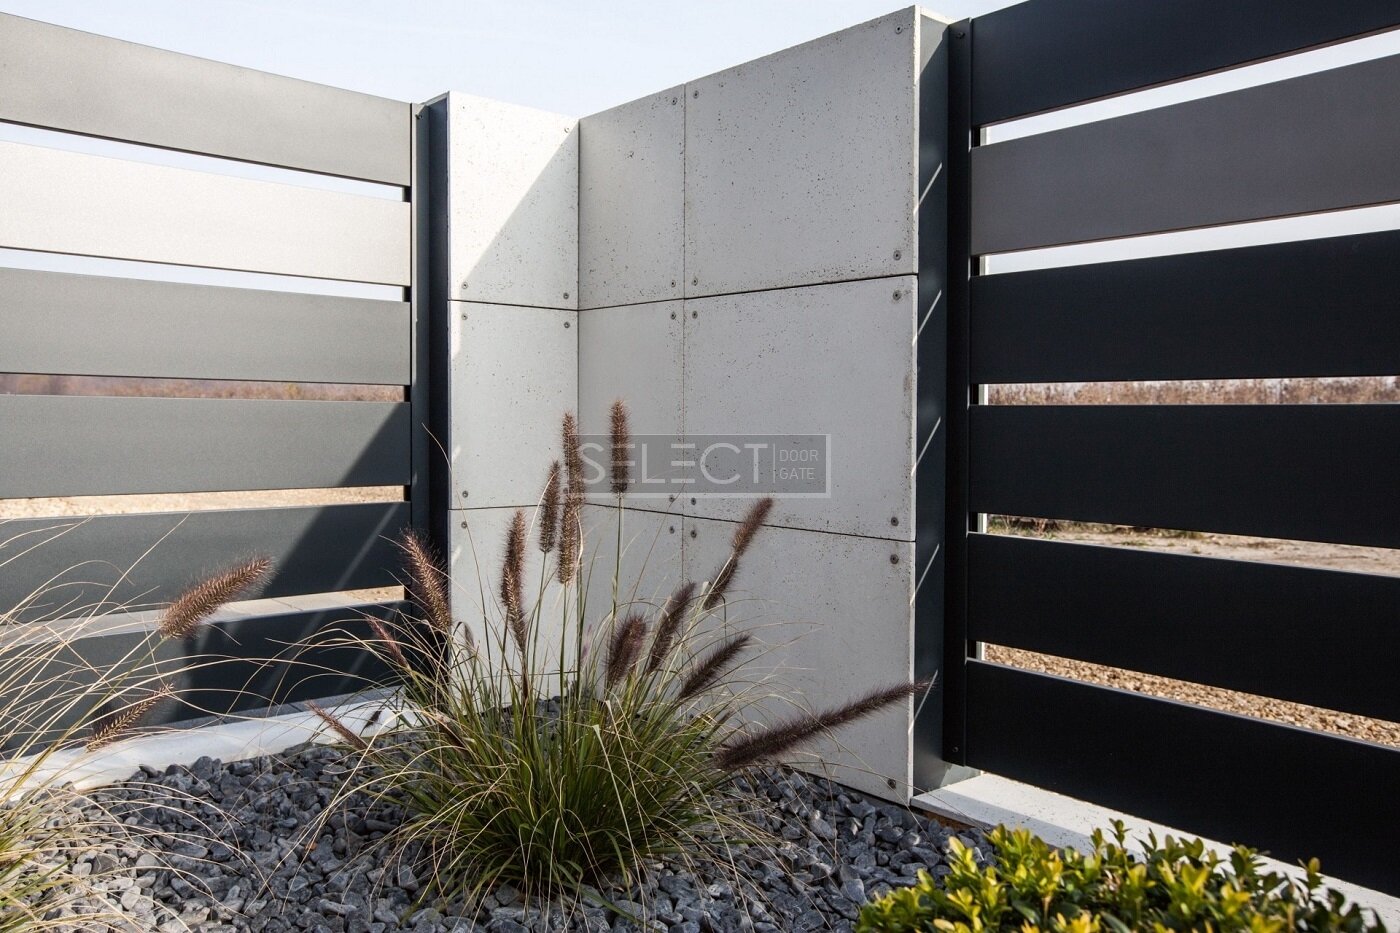 Гарний паркан для приватного будинку - приклади фотографії виготовлення від заводу SELECT 